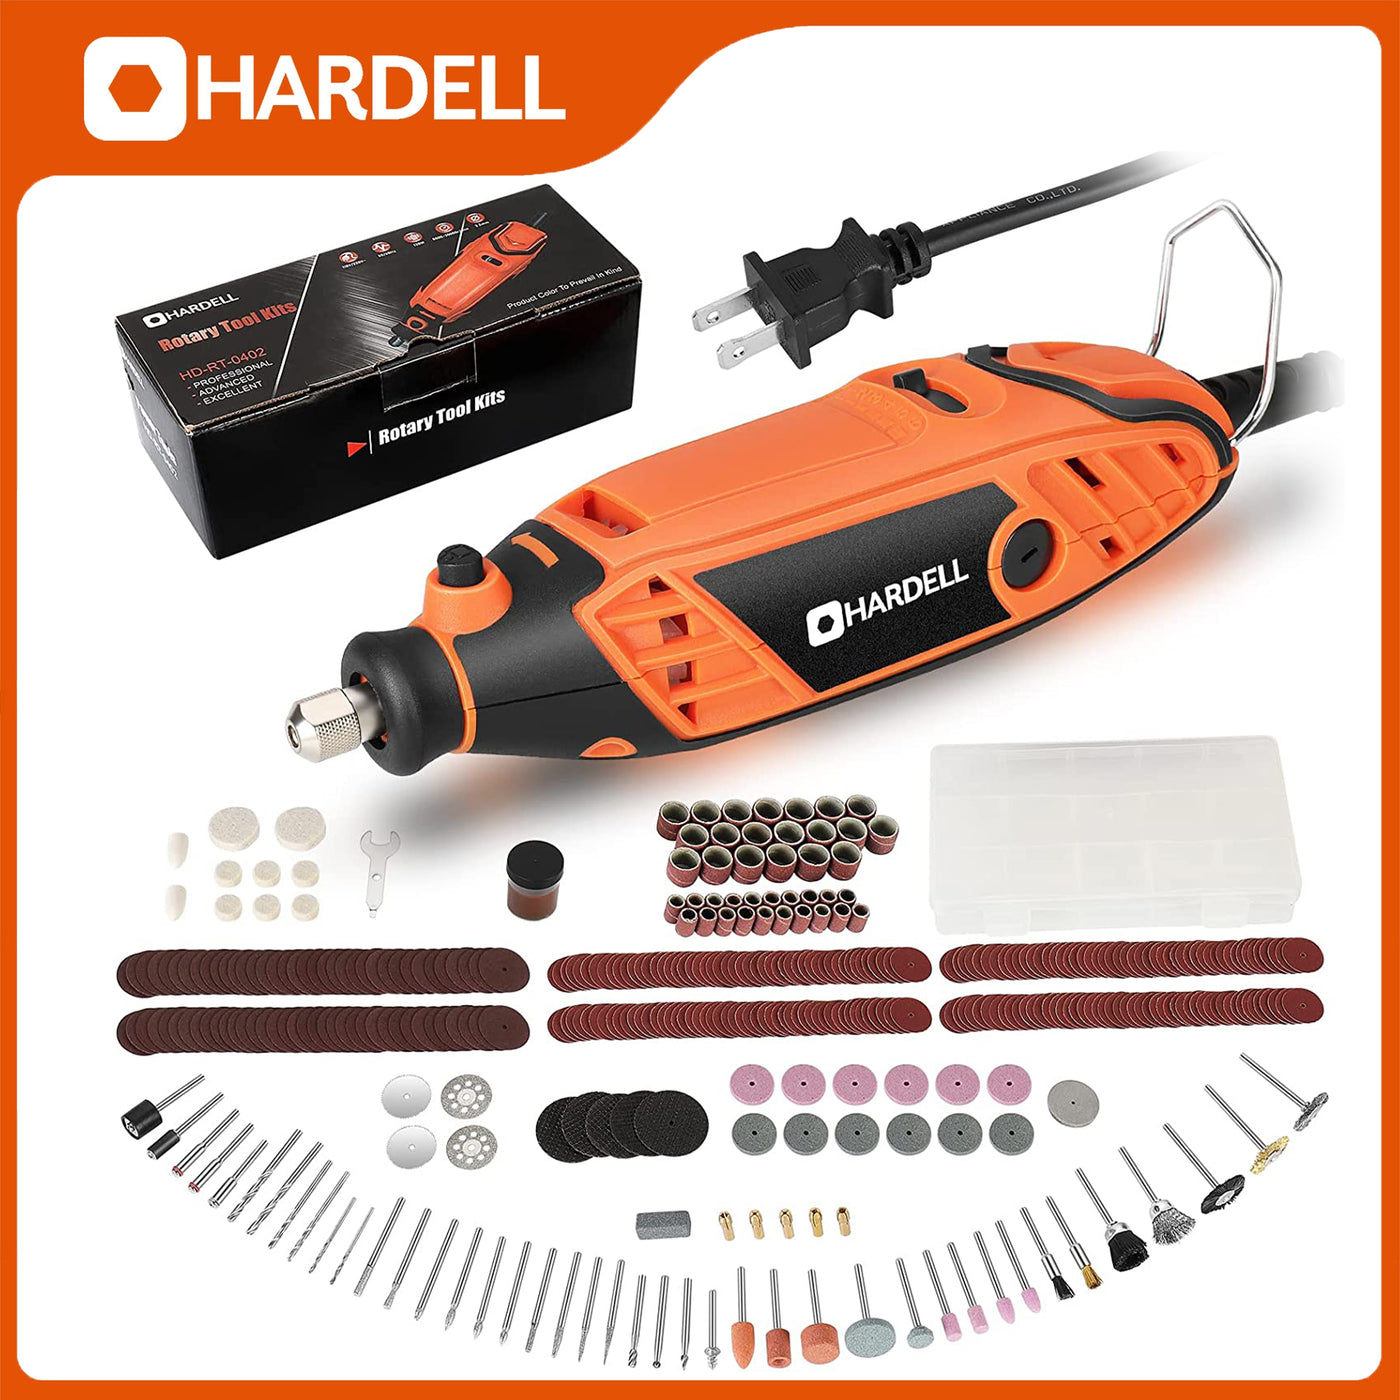 HARDELL HDRT3130 130W Power Rotary Tool - Hardell